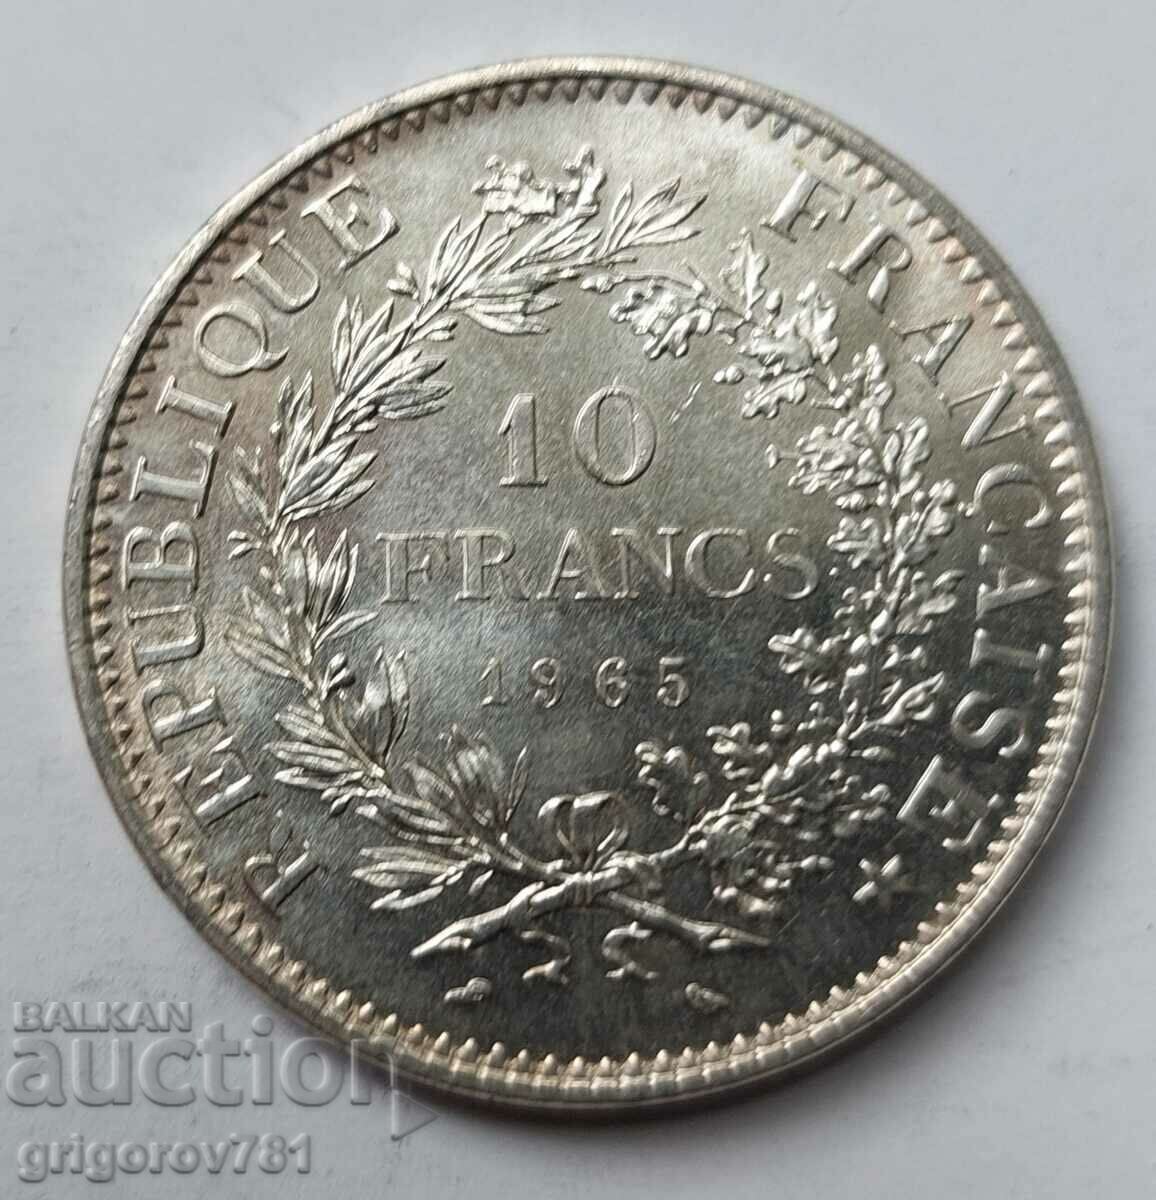 10 Φράγκα Ασήμι Γαλλία 1965 - Ασημένιο νόμισμα #58